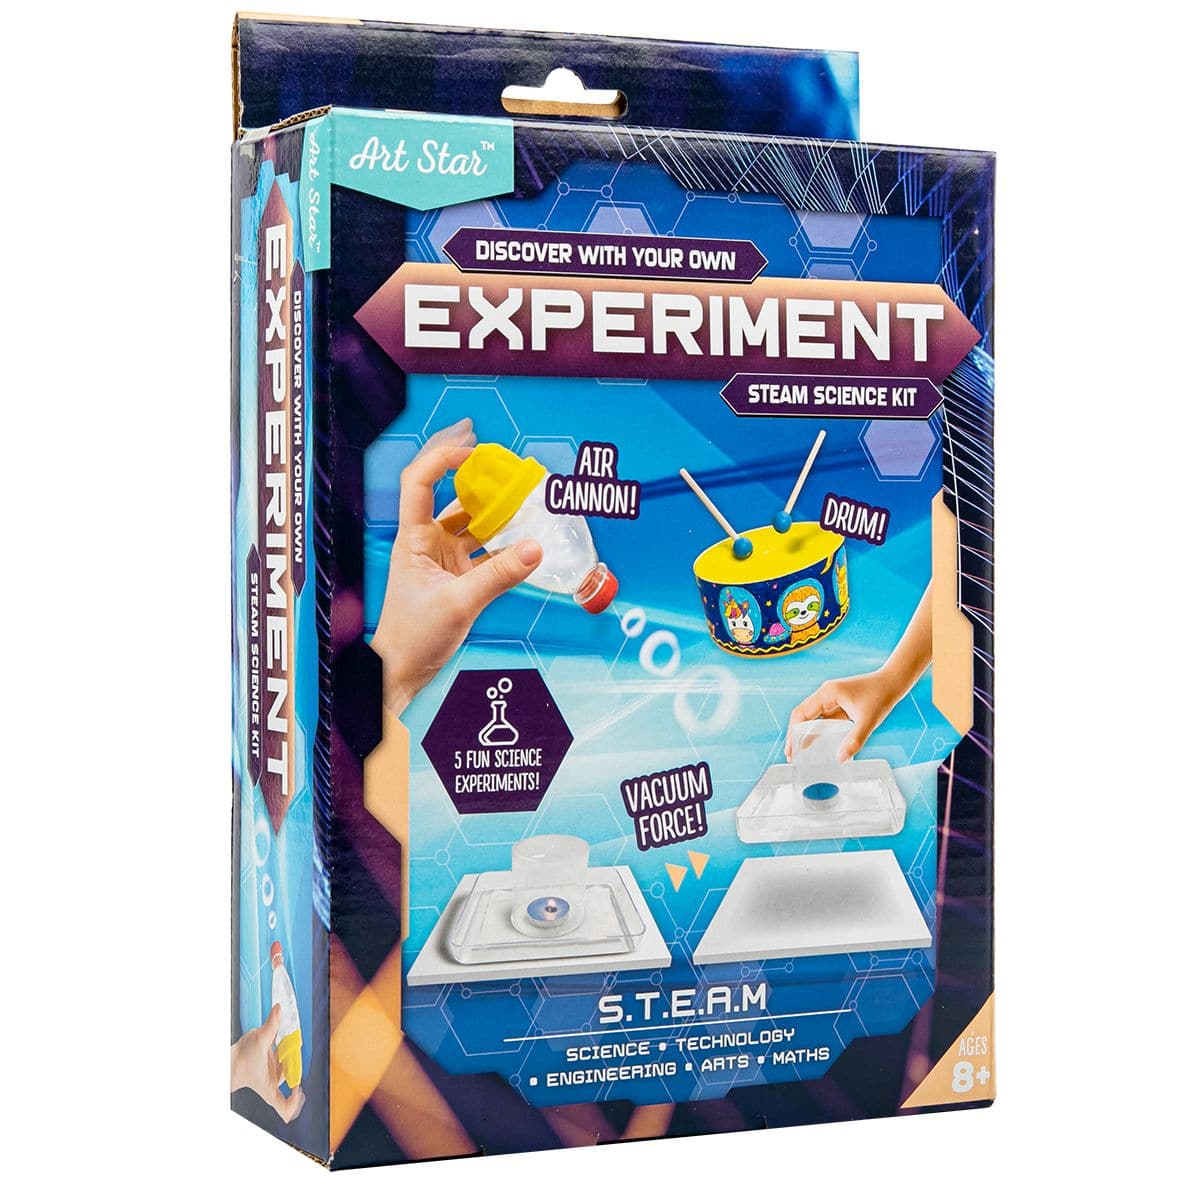 Image of Art Star Basic Experiment STEAM Kit